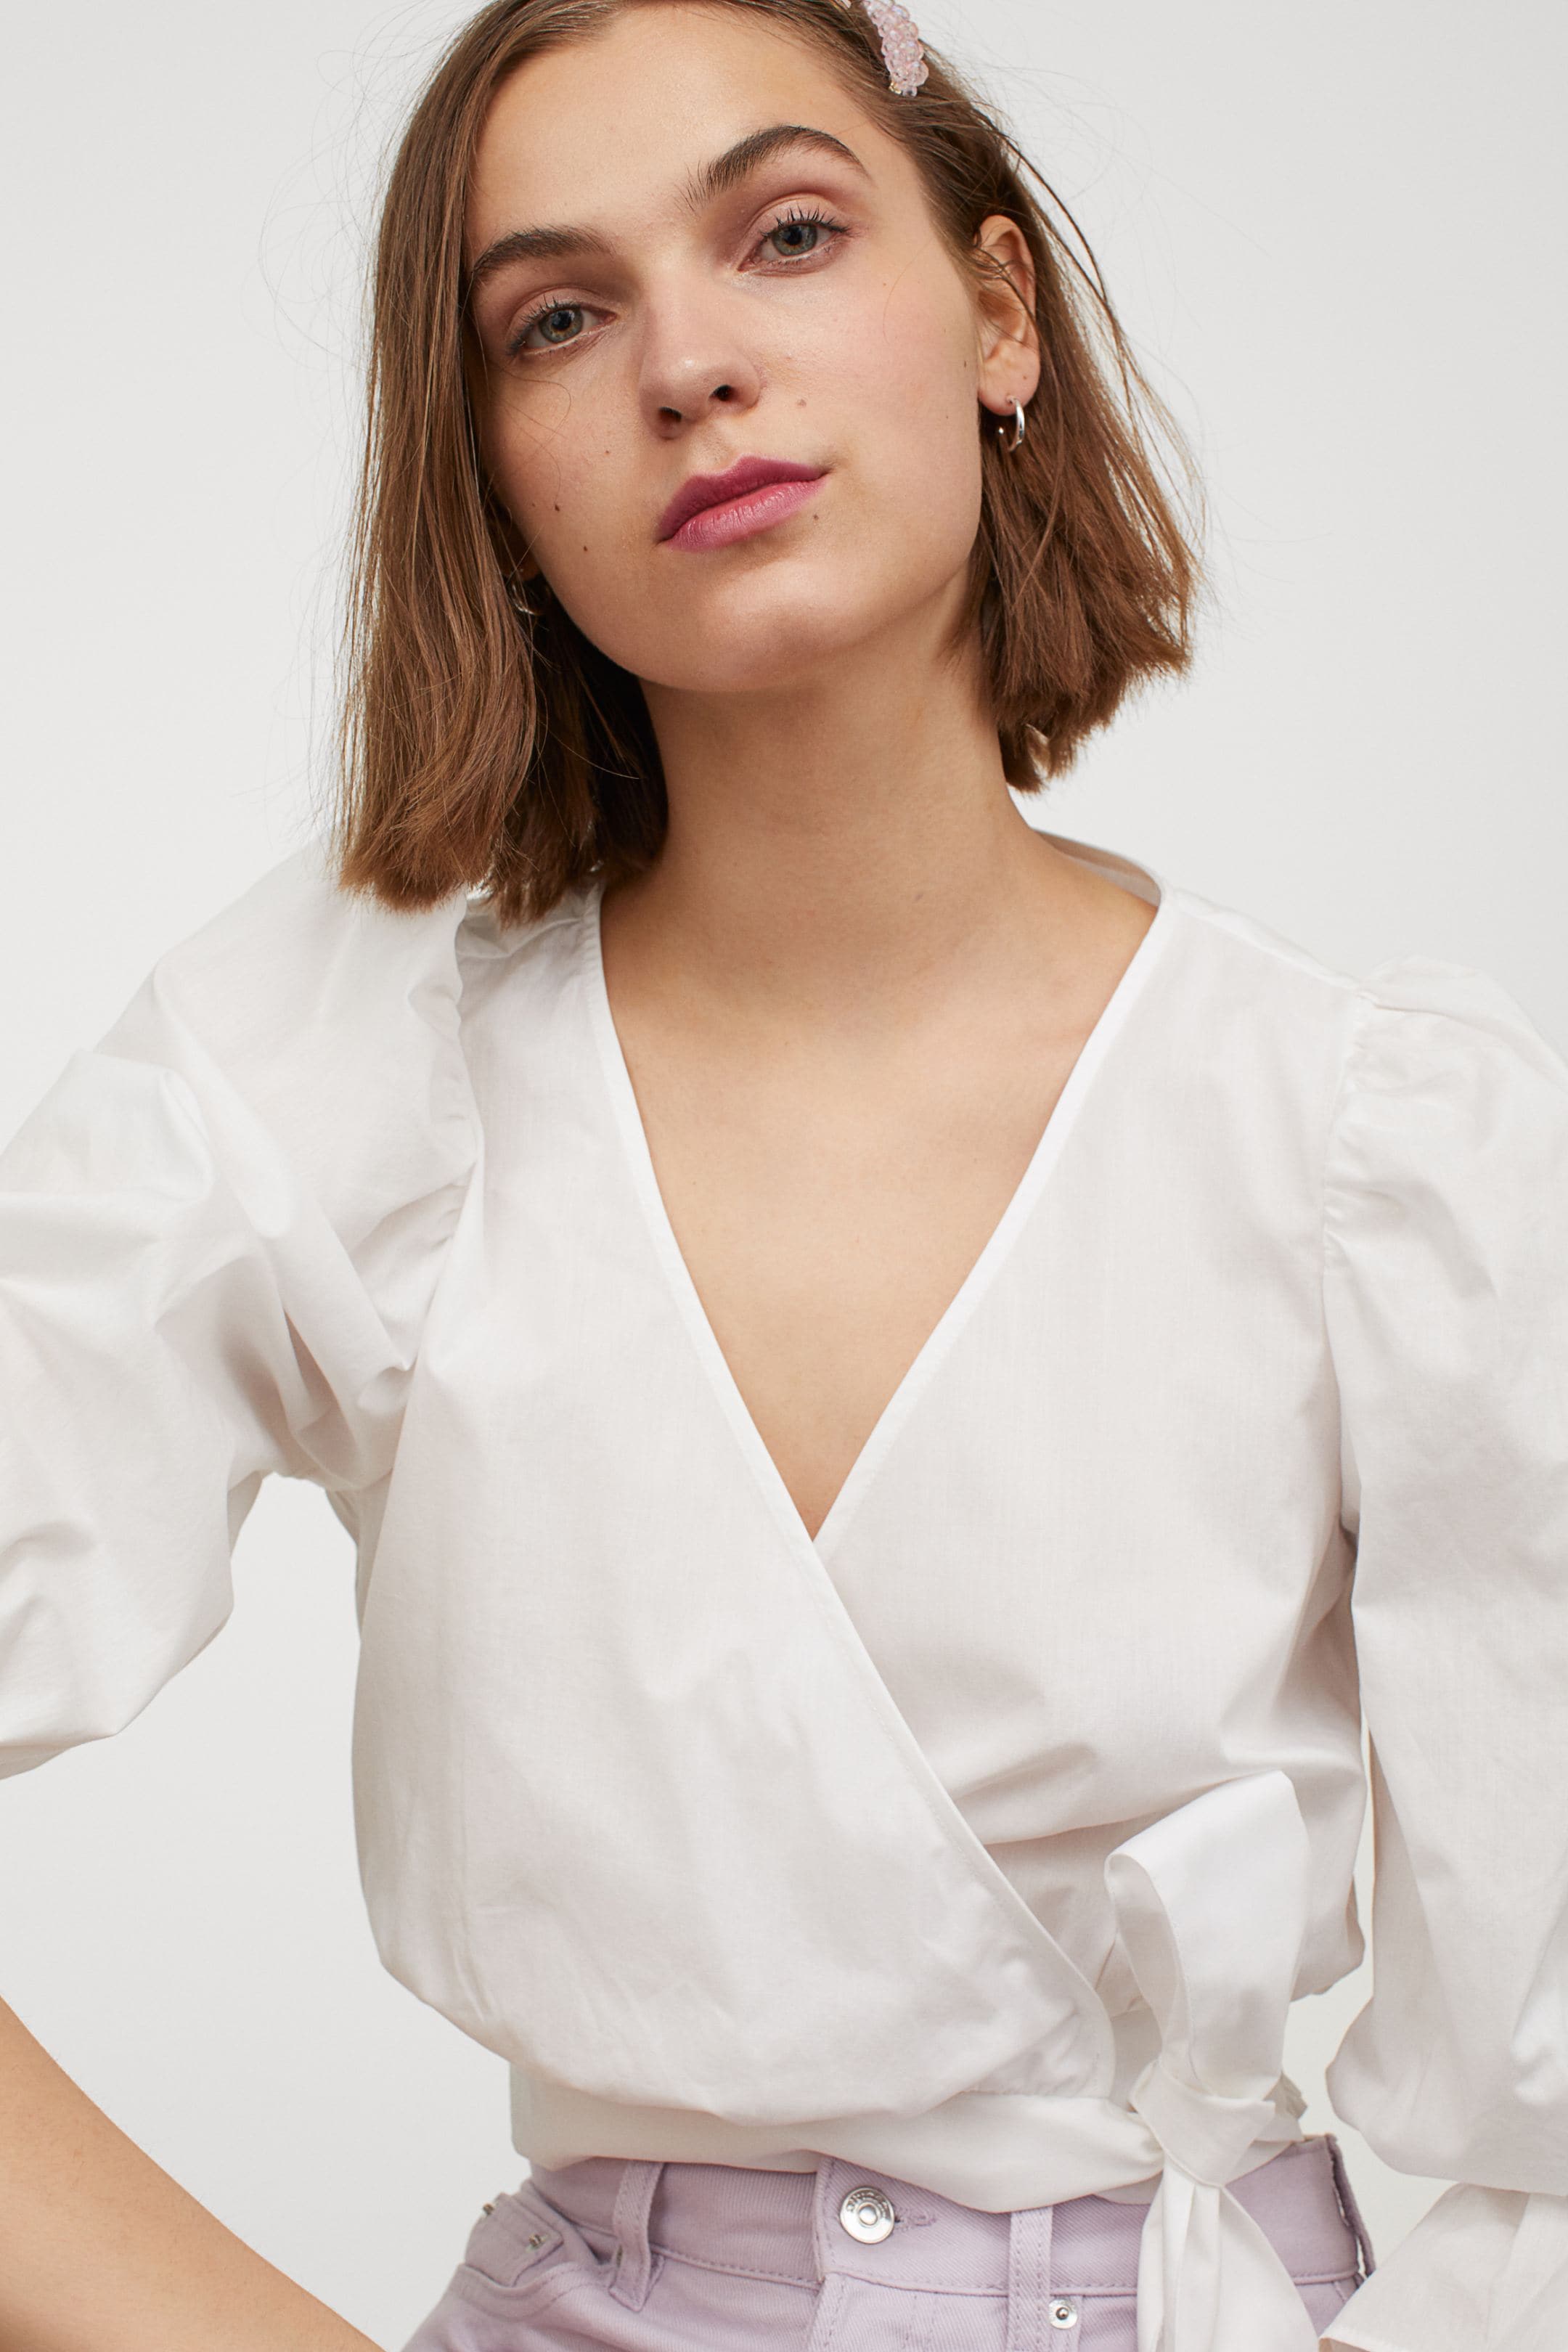 Fotos: Las blusas blancas de la nueva colección de H&M un flechazo y sientan de maravilla a cualquier edad | Mujer Hoy